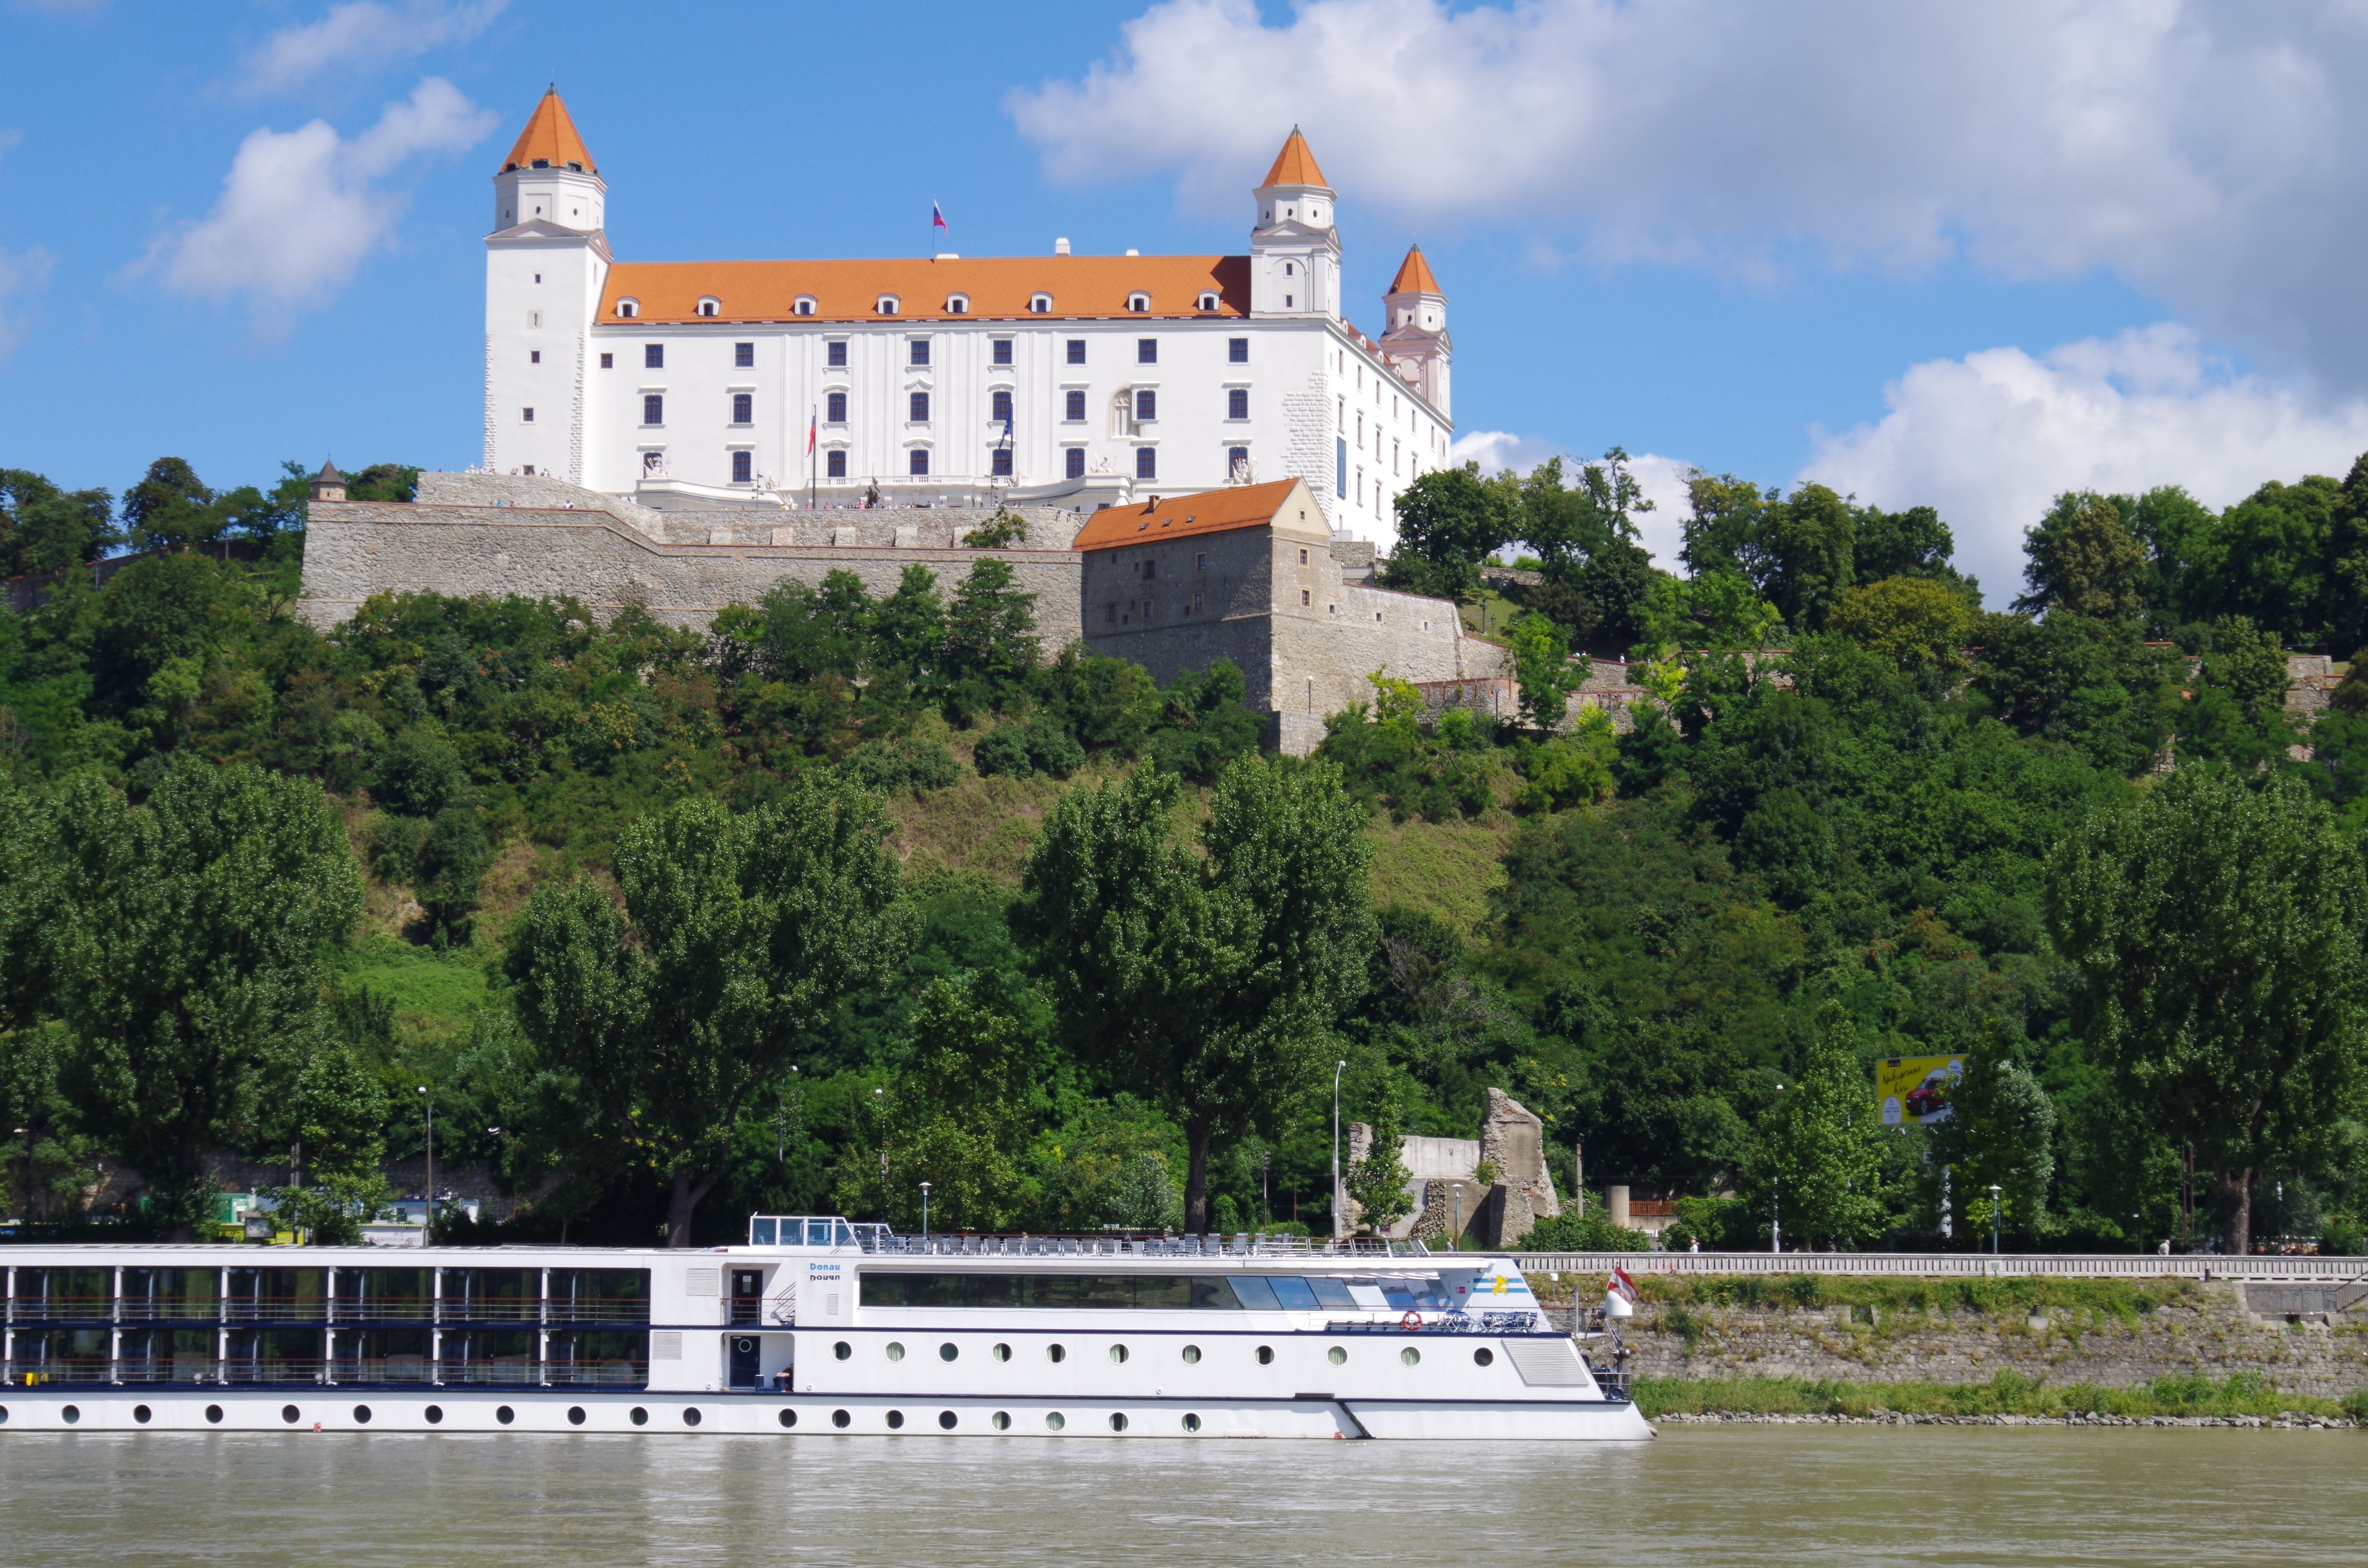 Gutschein für eine Donaukreuzfahrt für 2 Personen